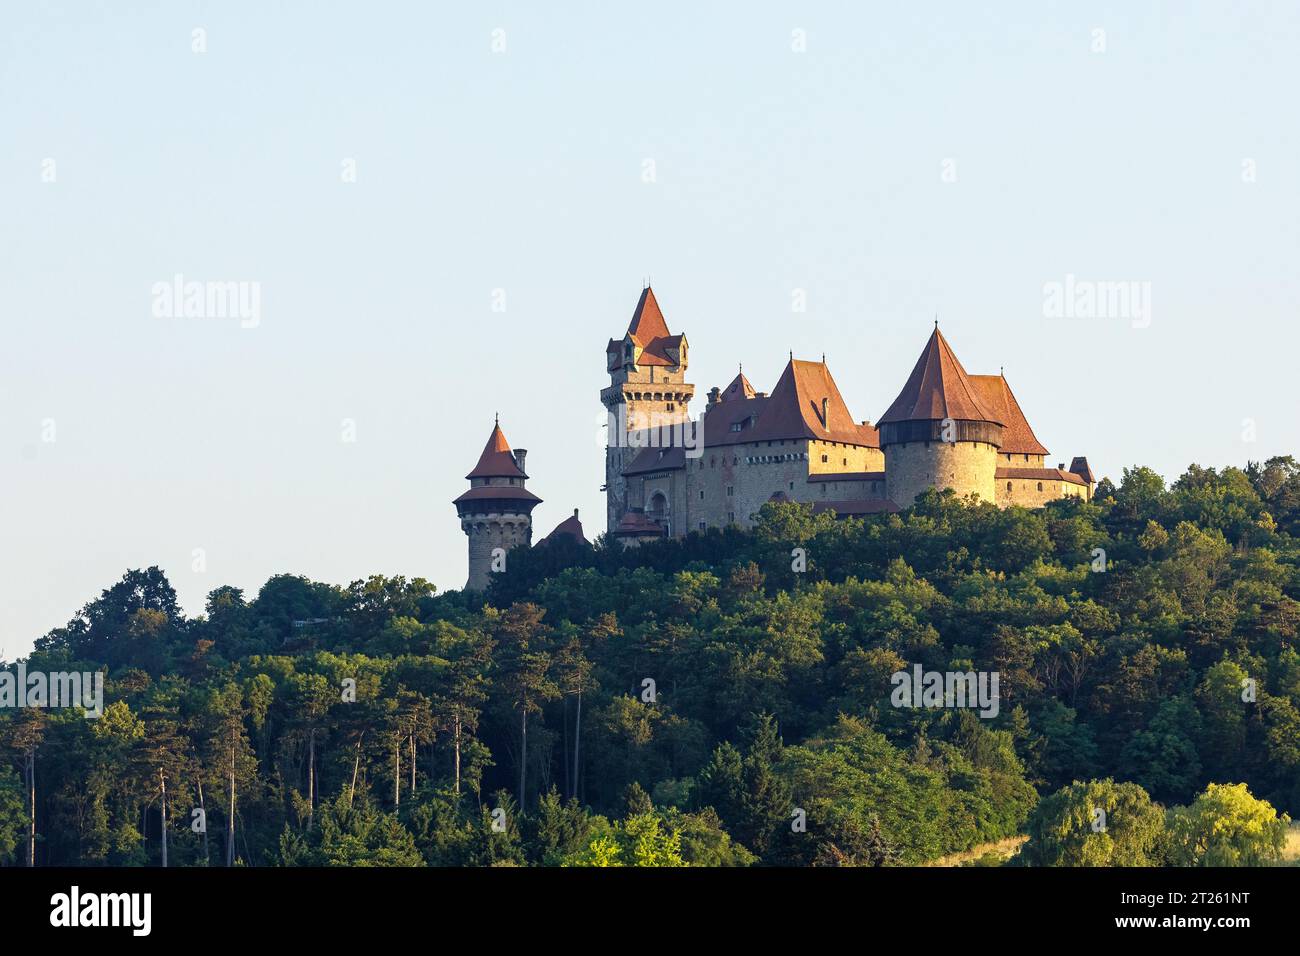 The Castle Kreuzenstein in Leobendorf at Vienna Austria Stock Photo